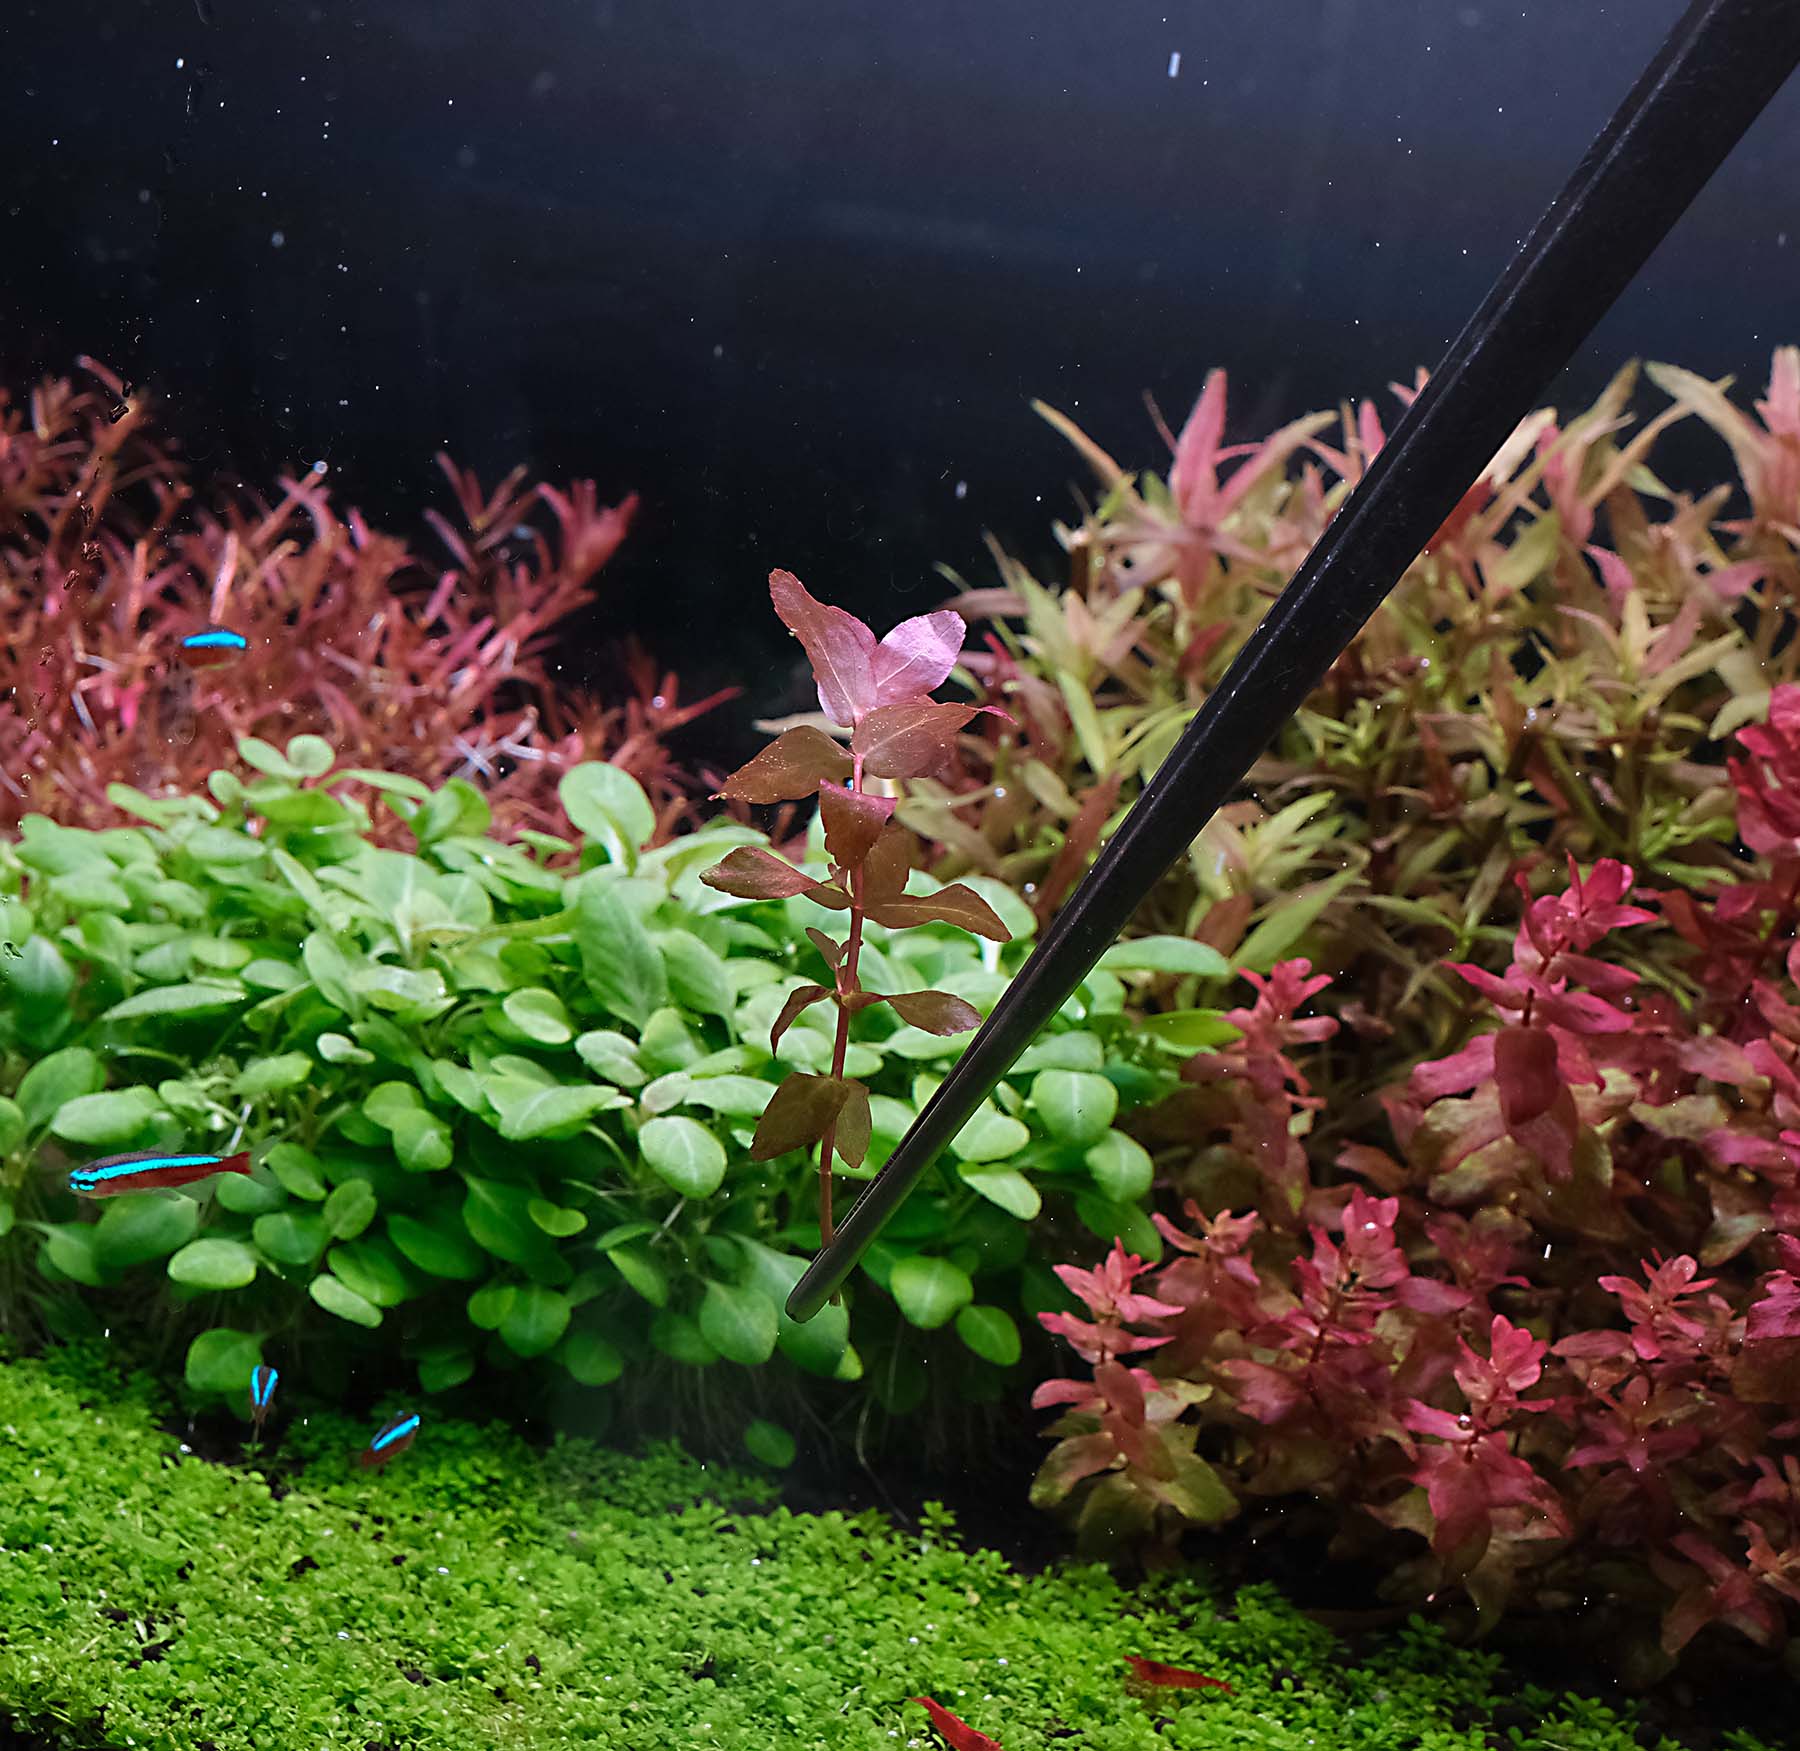 How to plant aquarium plant